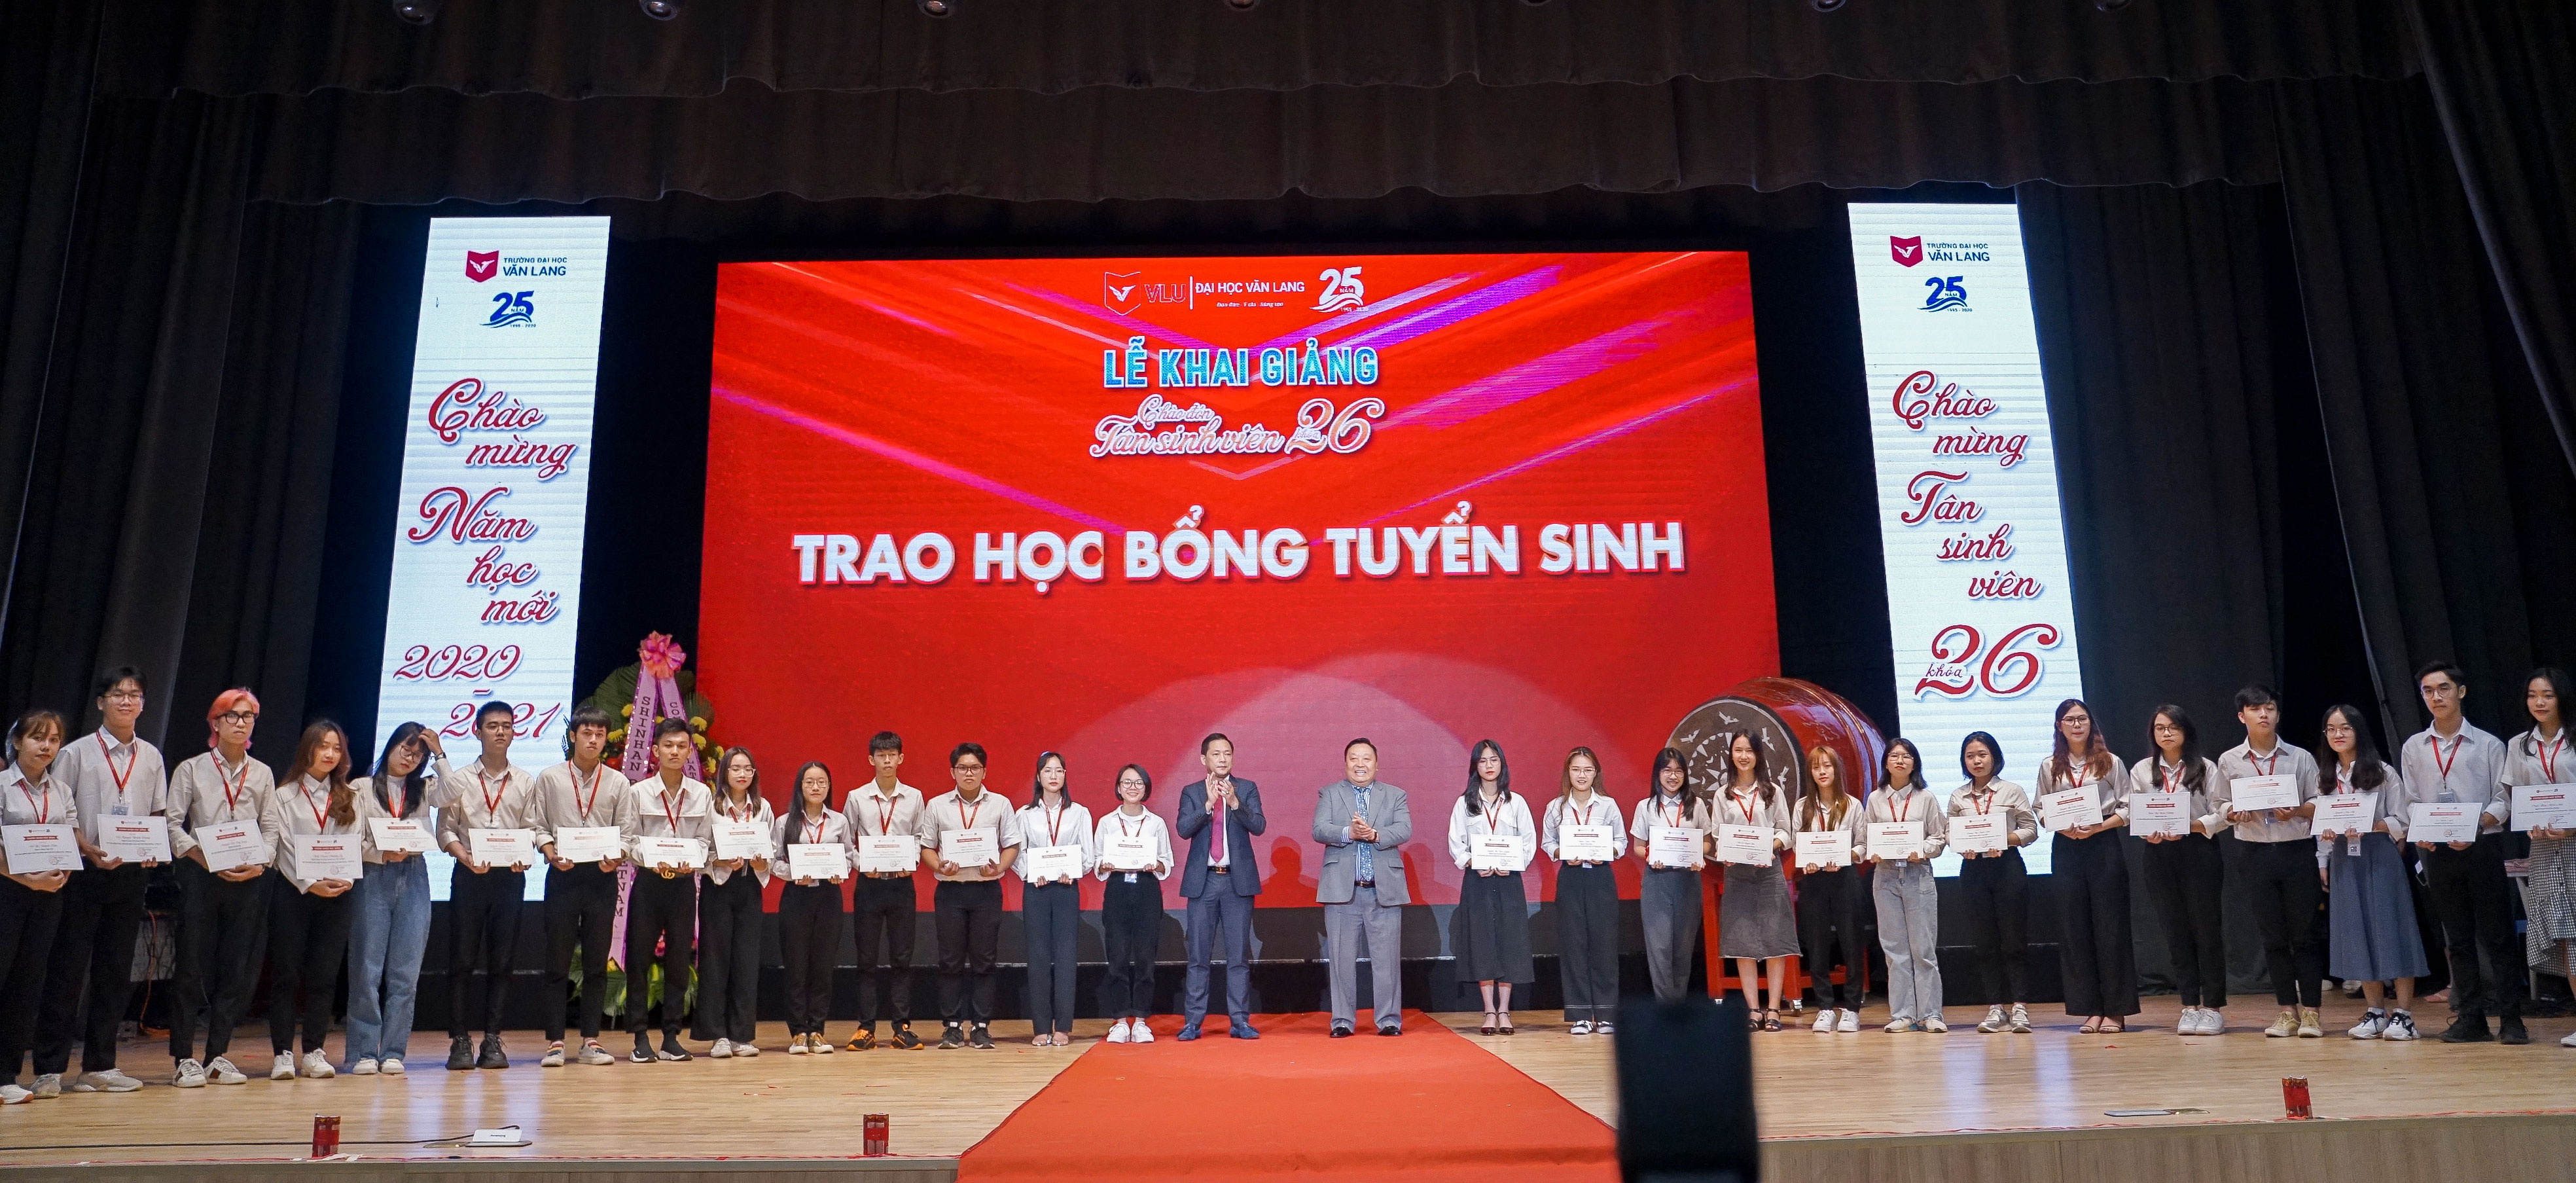 Đại học Văn Lang đã trao 10 tỉ đồng học bổng cho tân sinh viên khóa 26, trong Lễ khai giảng năm 2020.